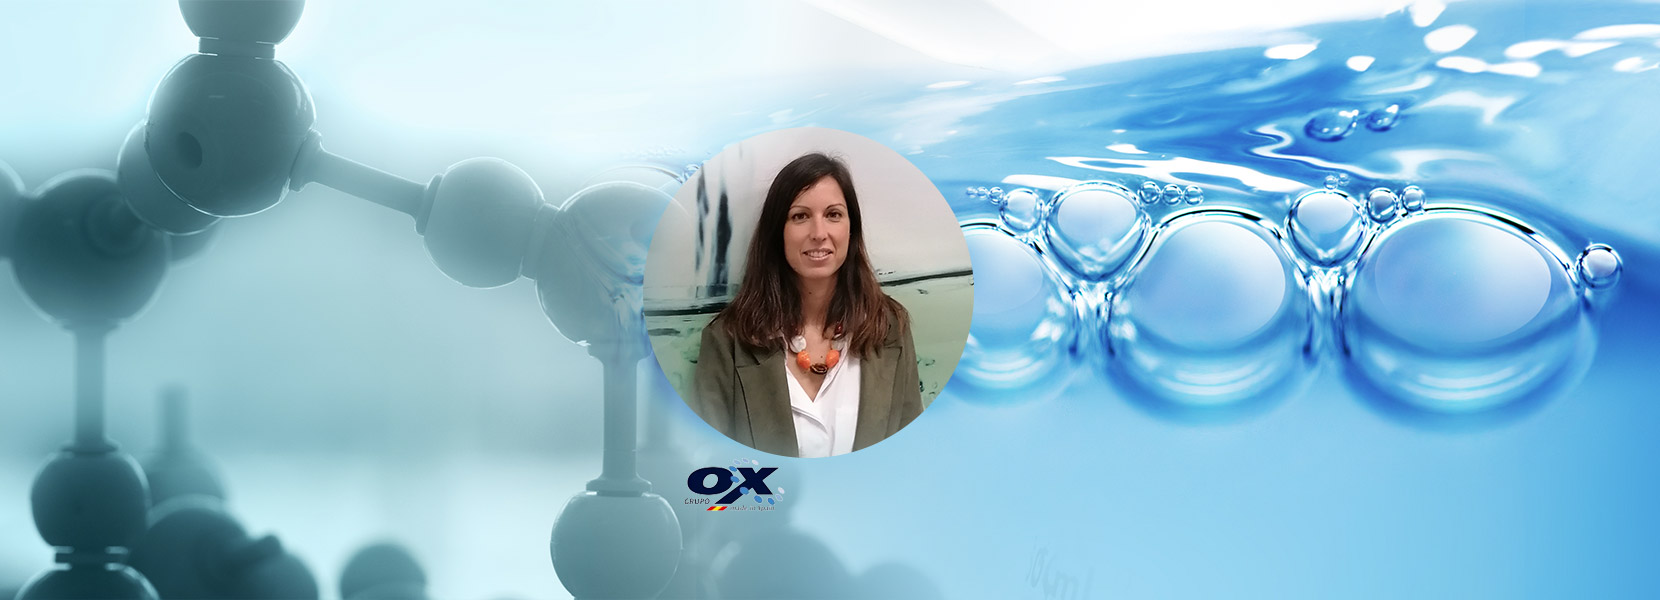 «Grupo OX está trasladando al sector de producción animal grandes avances en términos de evolución tecnológica y digitalización del agua»